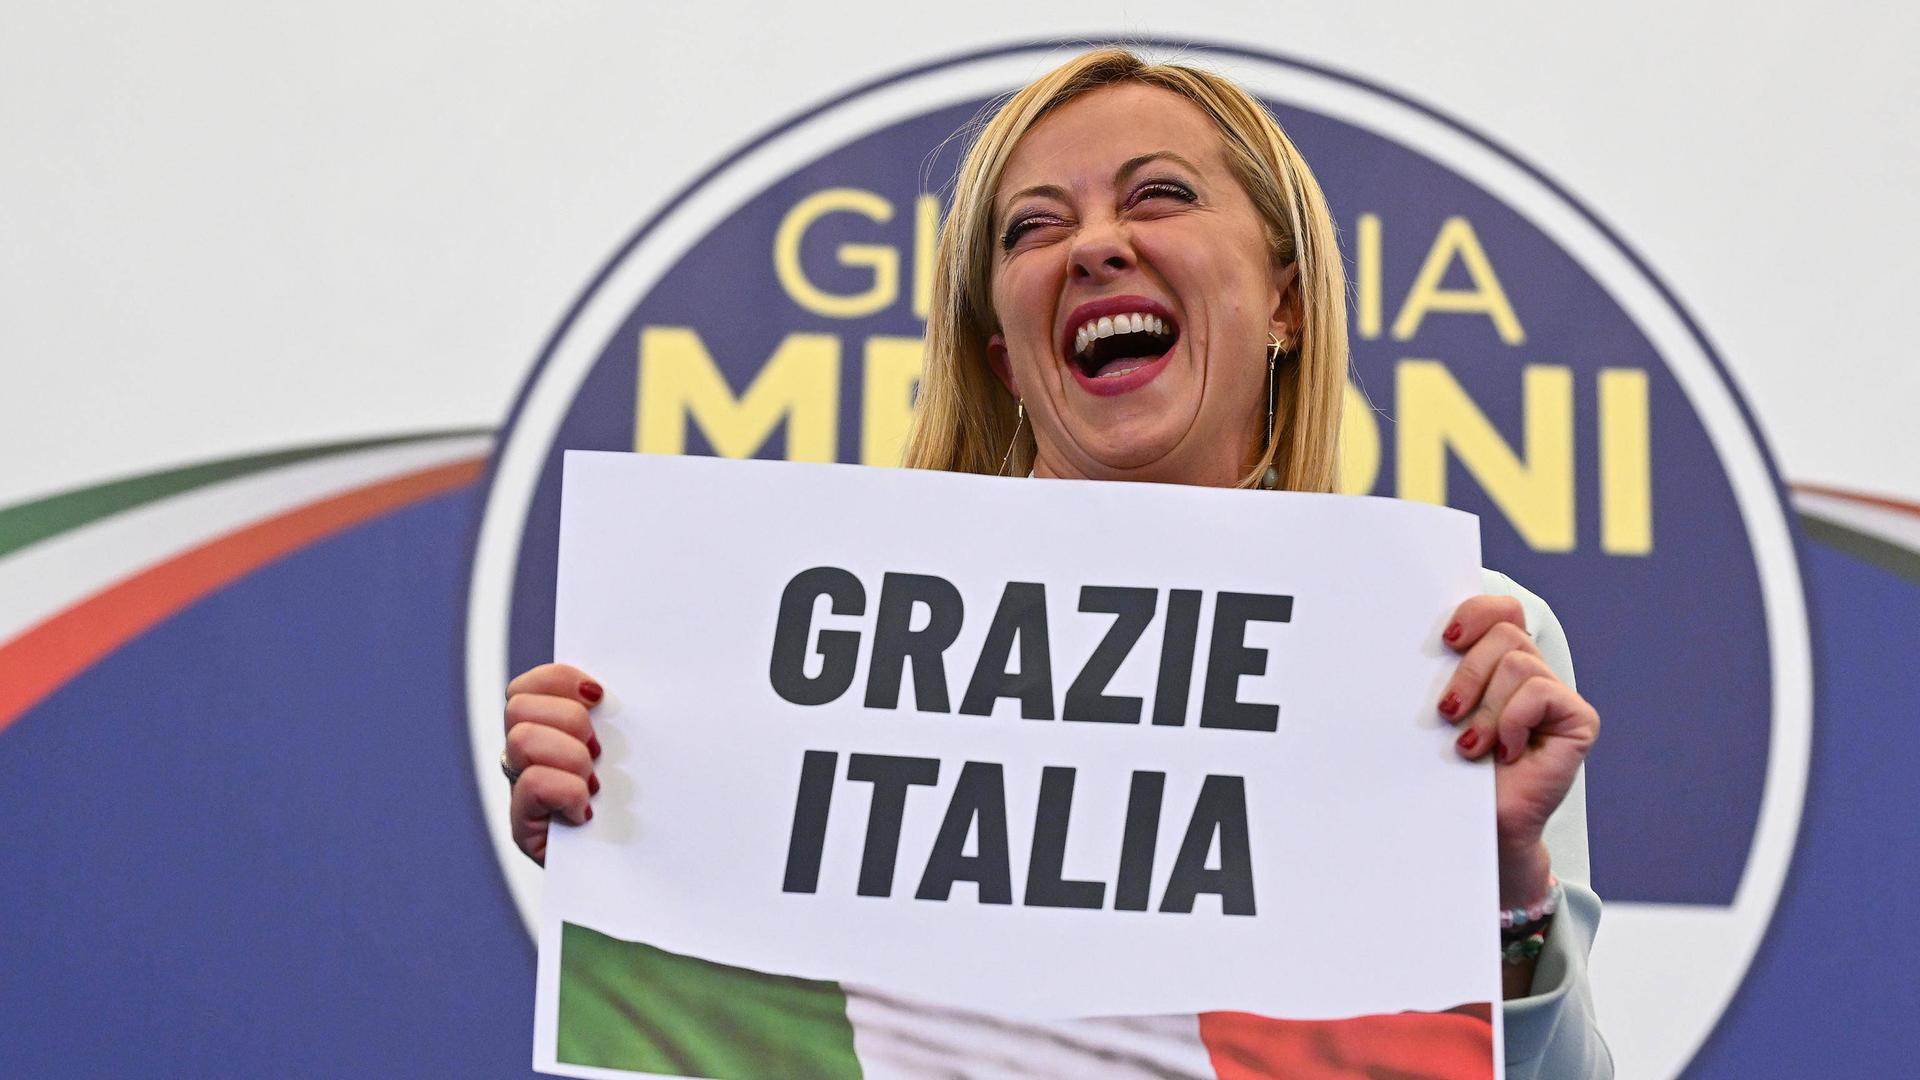 Meloni steht auf einer Bühne mit dem Logo ihrer Partei, lacht und hält ein Schild mit der Aufschrift "Grazie Italia" in der Hand. 